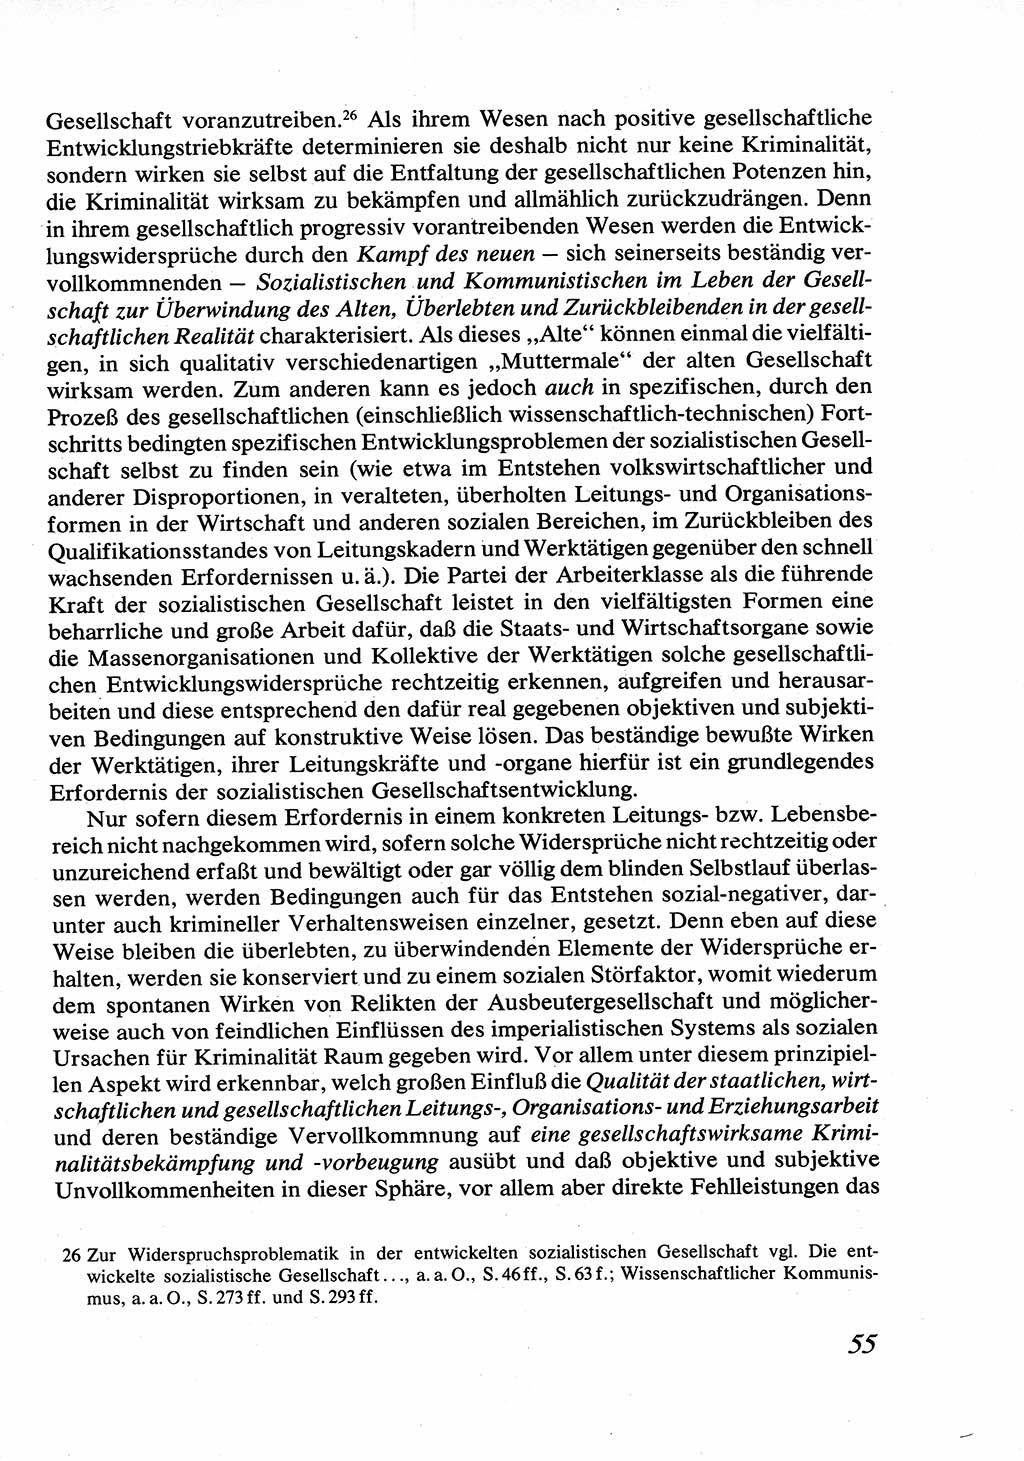 Strafrecht [Deutsche Demokratische Republik (DDR)], Allgemeiner Teil, Lehrbuch 1976, Seite 55 (Strafr. DDR AT Lb. 1976, S. 55)